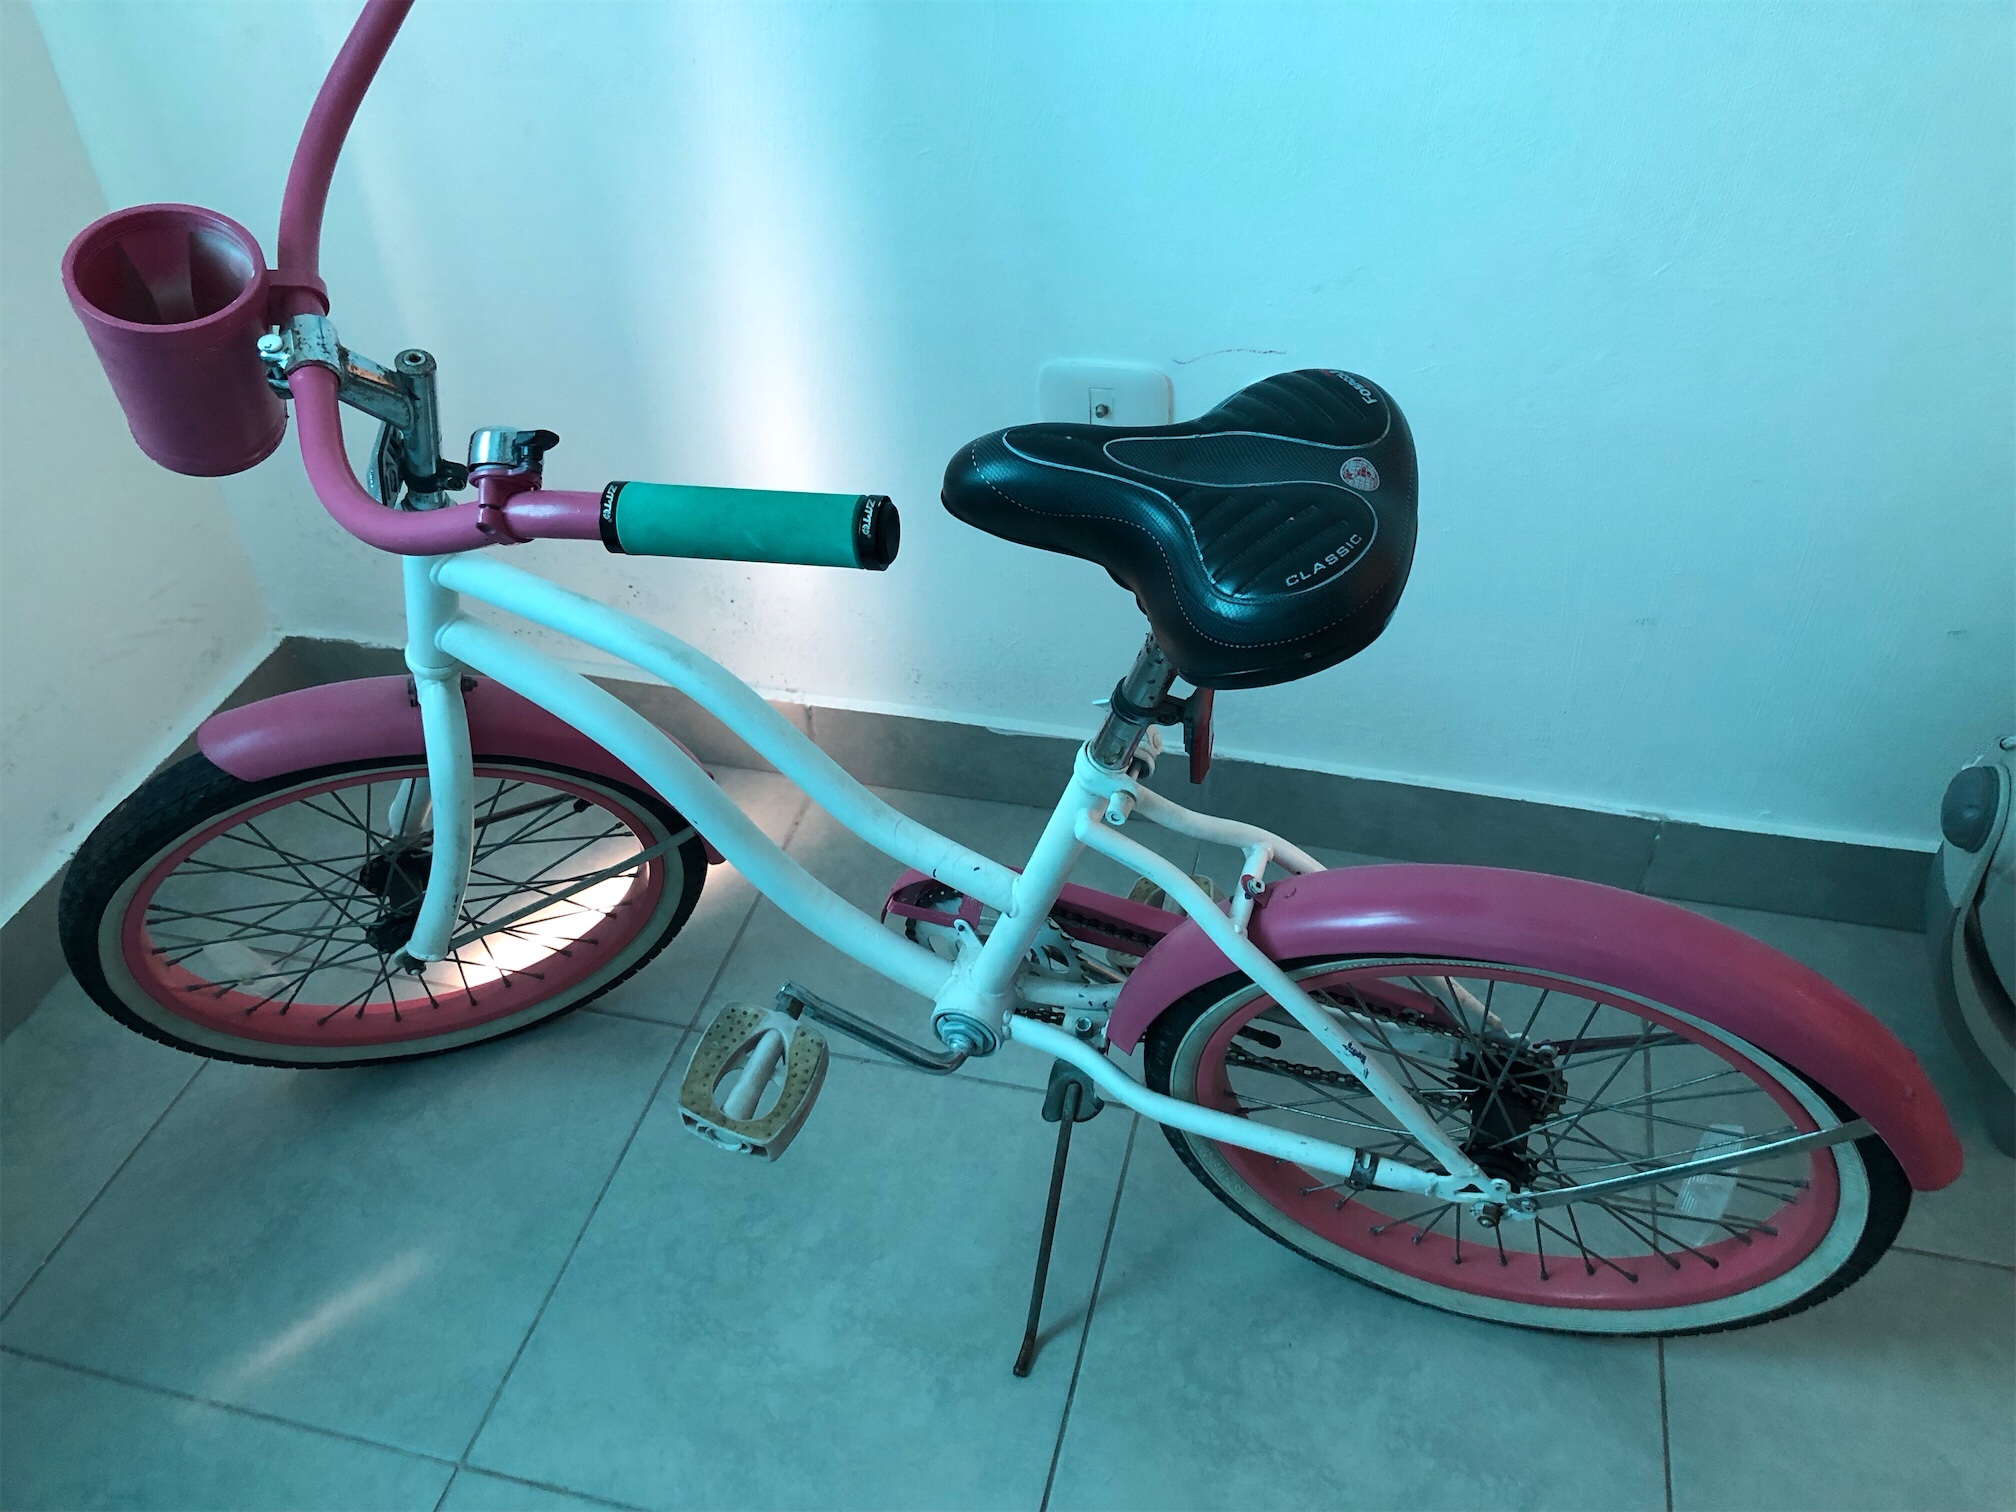 bicicletas y accesorios - venBicicleta una aro 22” rd$3,000 Rosada
Higuey 3